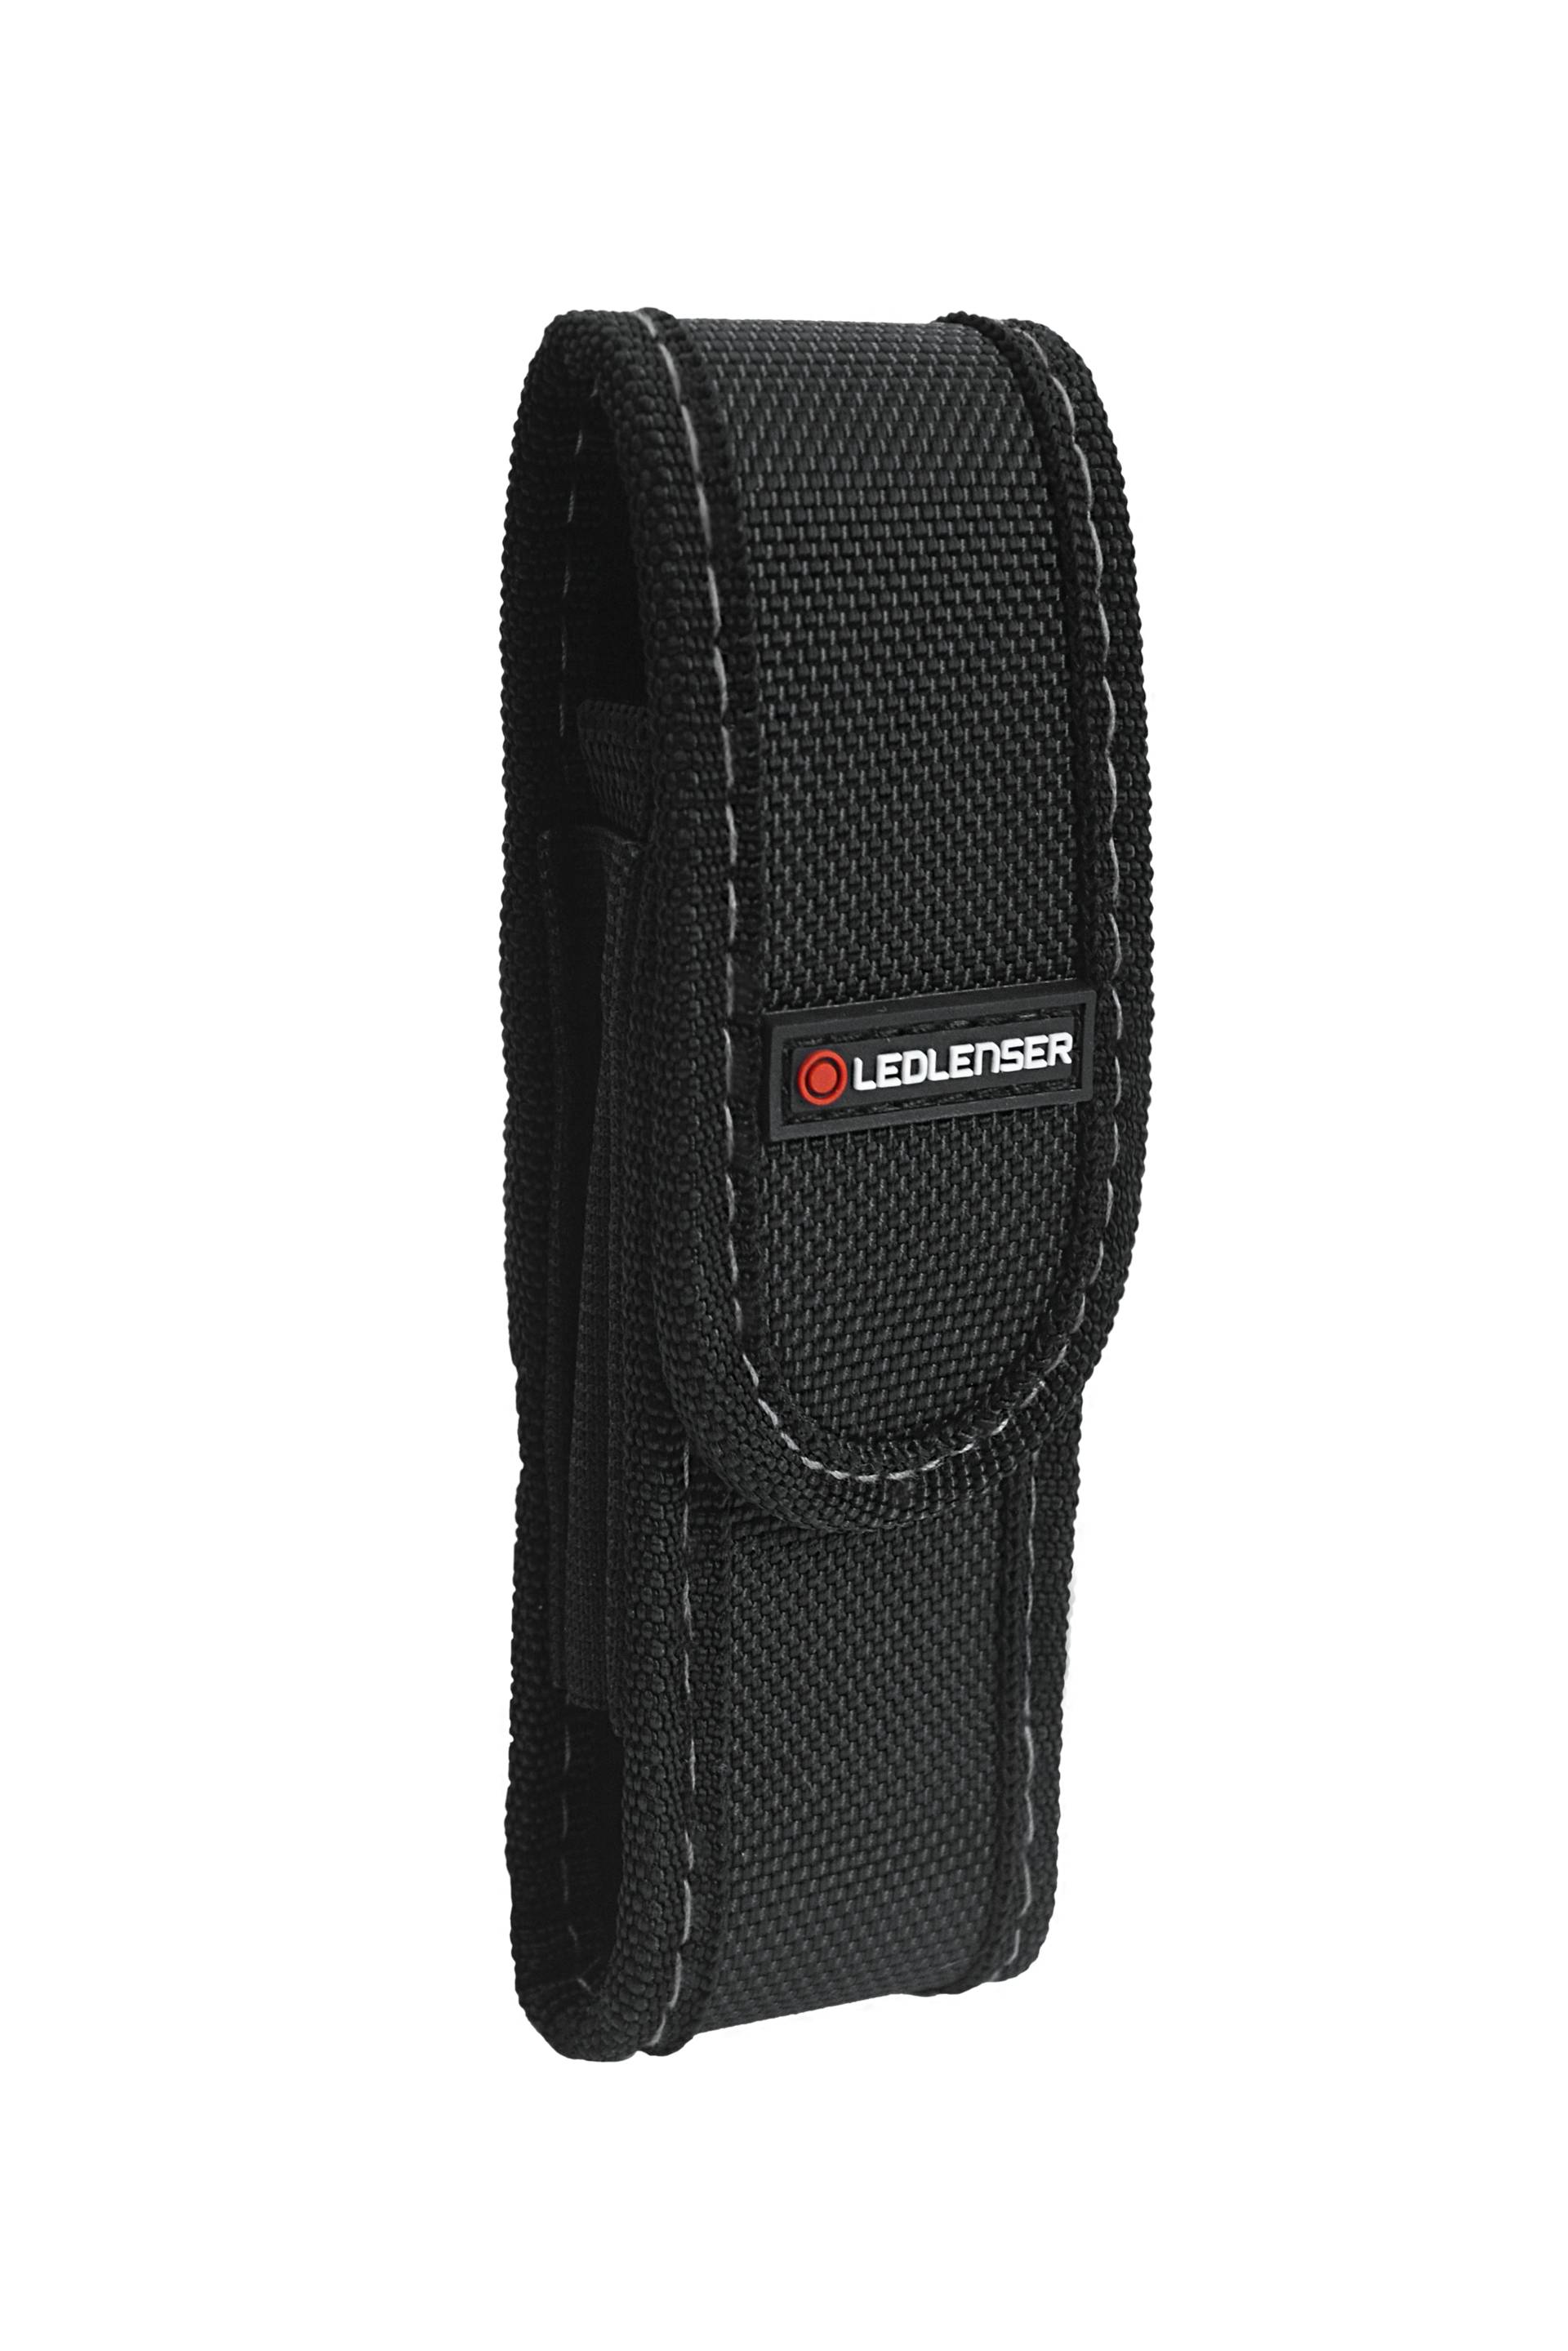 Ledlenser Safety Bag Type E - Gürteltasche für Taschenlampen von Ledlenser GmbH & Co Kg